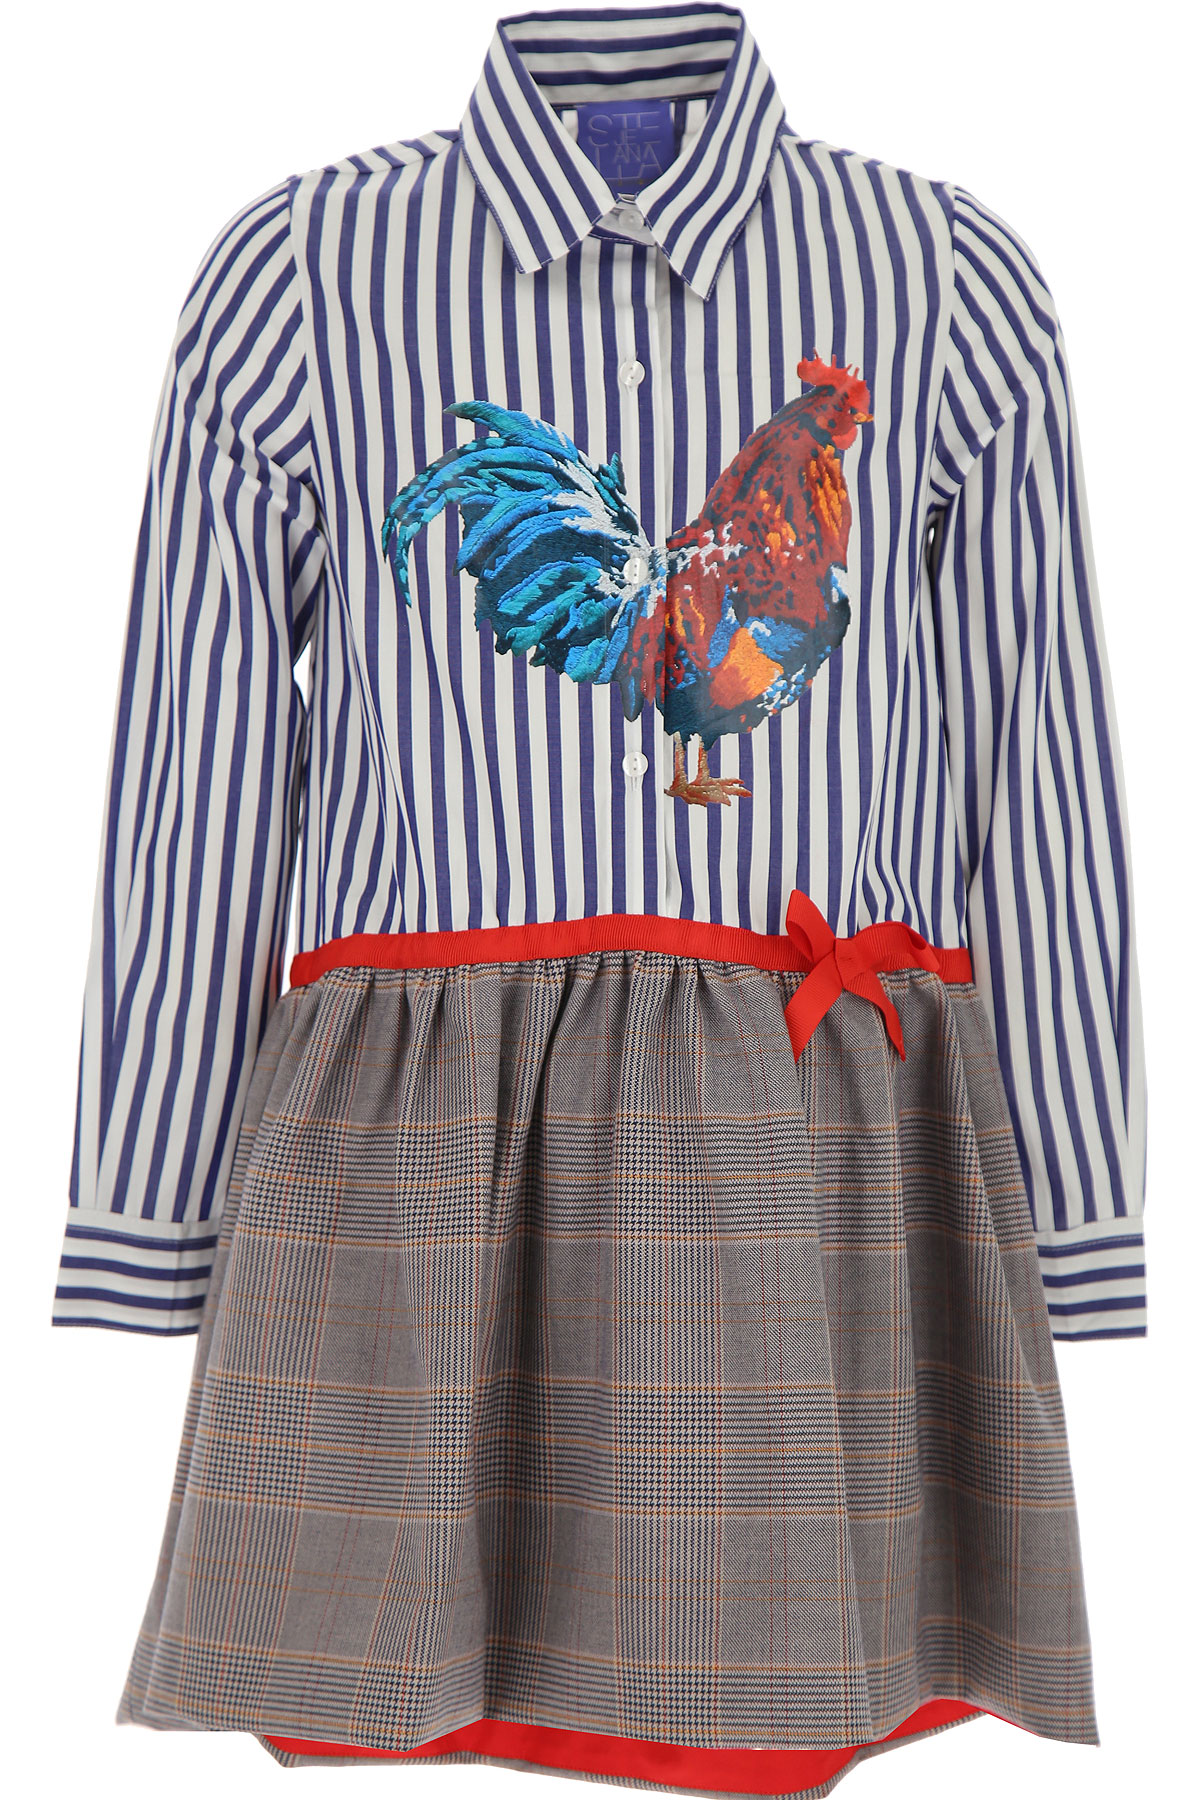 Stella Jean Kleid für Mädchen Günstig im Sale, Mehrfarbig, Polyester, 2017, 4Y 6Y 8Y